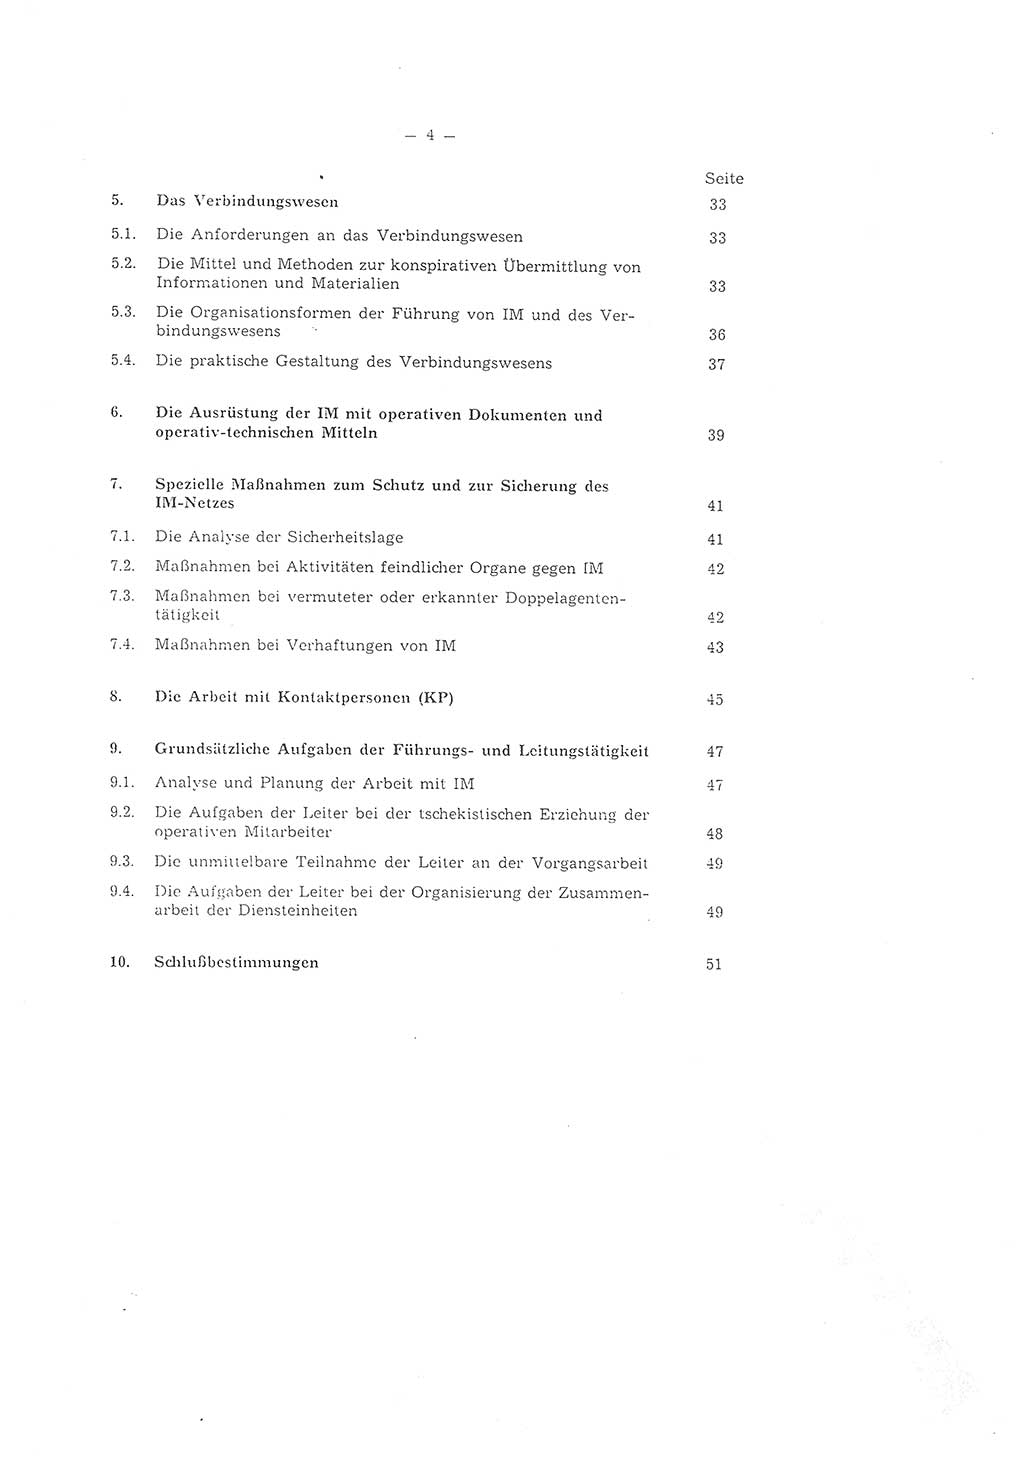 Richtlinie 2/79 für die Arbeit mit Inoffiziellen Mitarbeitern (IM) im Operationsgebiet, Deutsche Demokratische Republik (DDR), Ministerium für Staatssicherheit (MfS), Der Minister (Mielke), Geheime Verschlußsache (GVS) ooo8-2/79, Berlin 1979, Seite 4 (RL 2/79 DDR MfS Min. GVS ooo8-2/79 1979, S. 4)